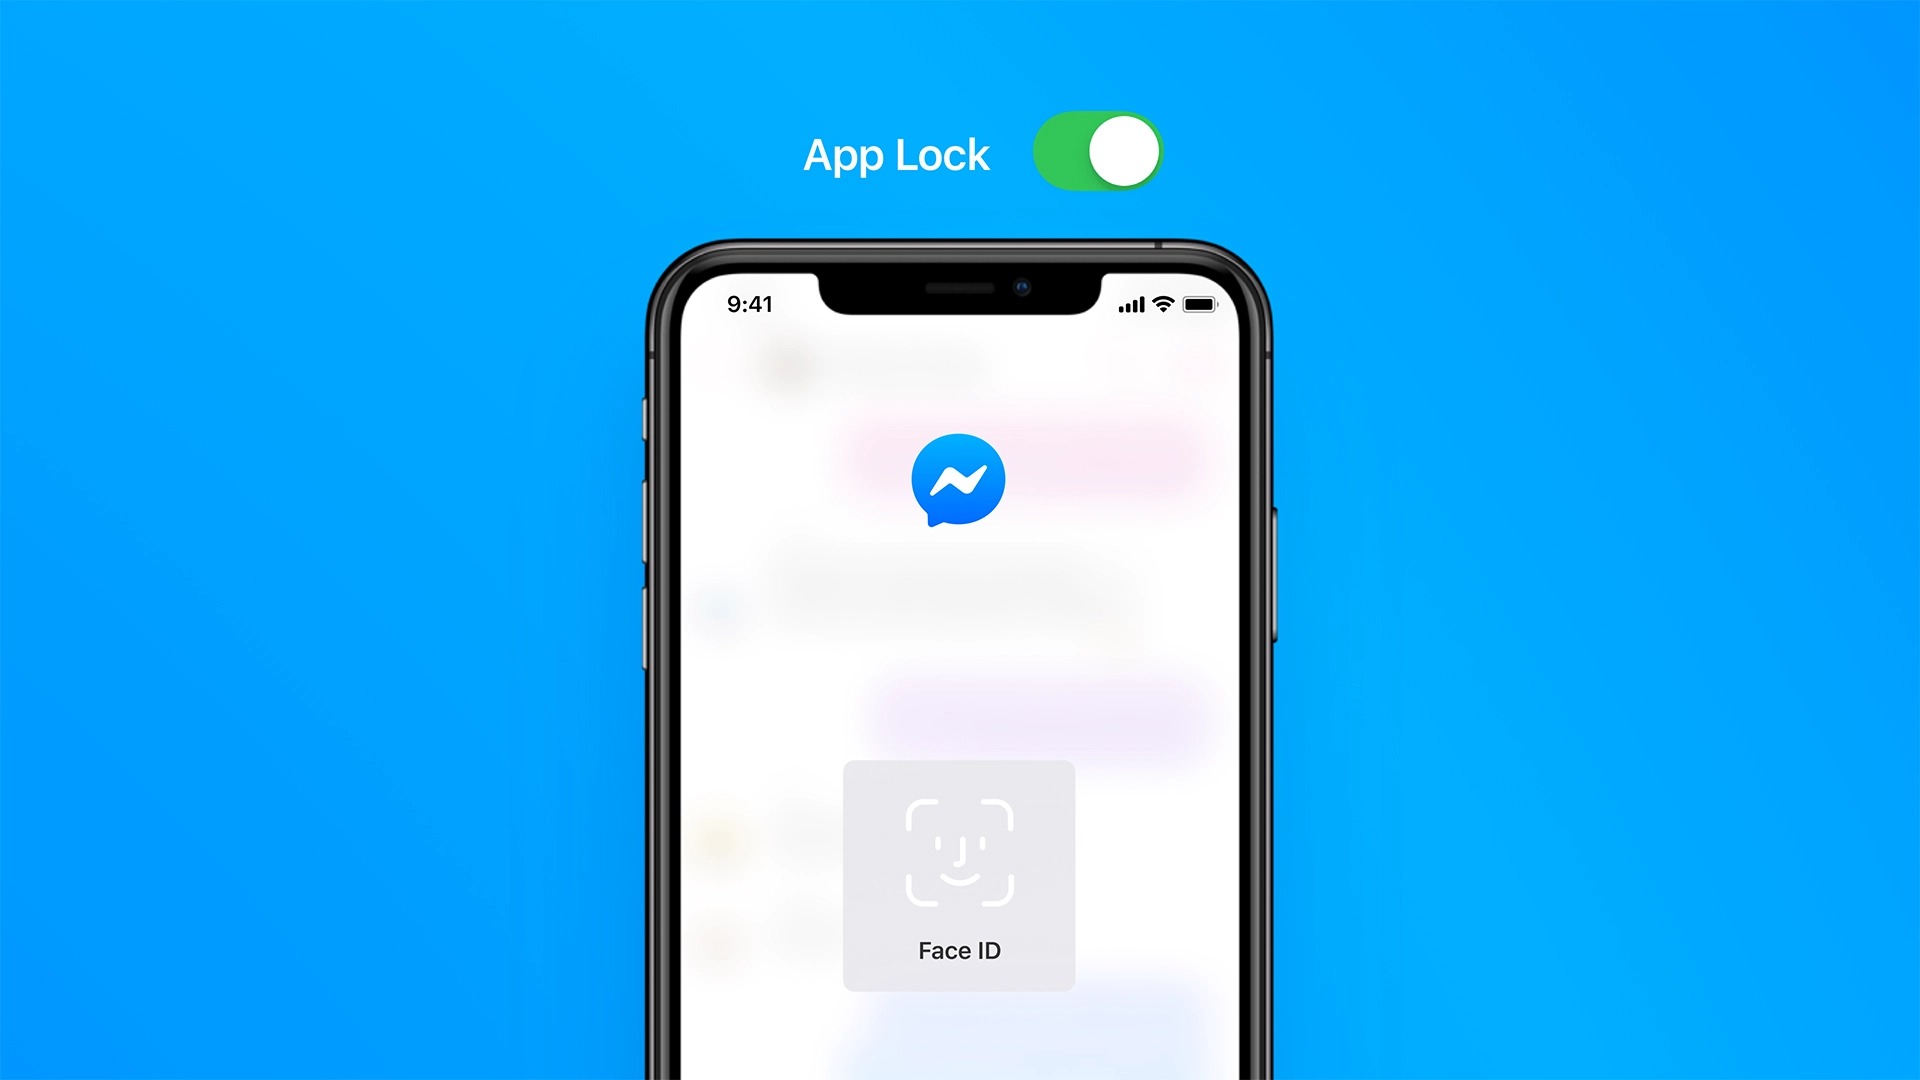 ｢Facebook Messenger｣のiOS向け公式アプリ、Face IDやTouch IDでアプリをロック可能に